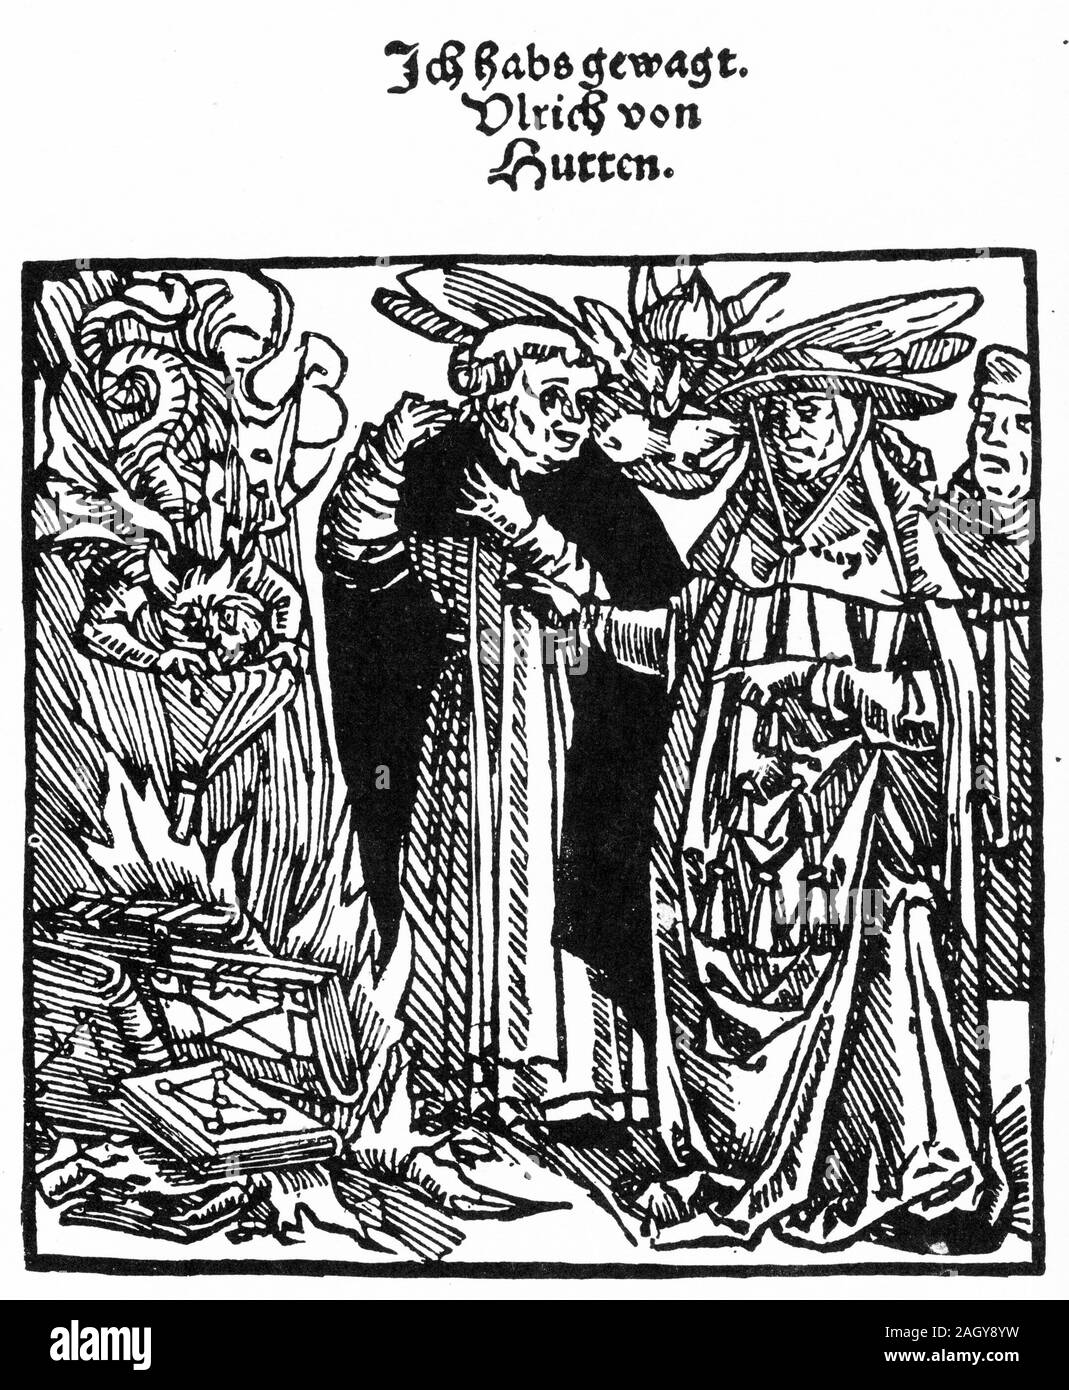 Pagina del titolo di un pamphlet in cui Ulrich Von Hutten proteste contro la bruciatura di Lutero di libri in Mainz. Pubblicato 1520-21. Foto Stock